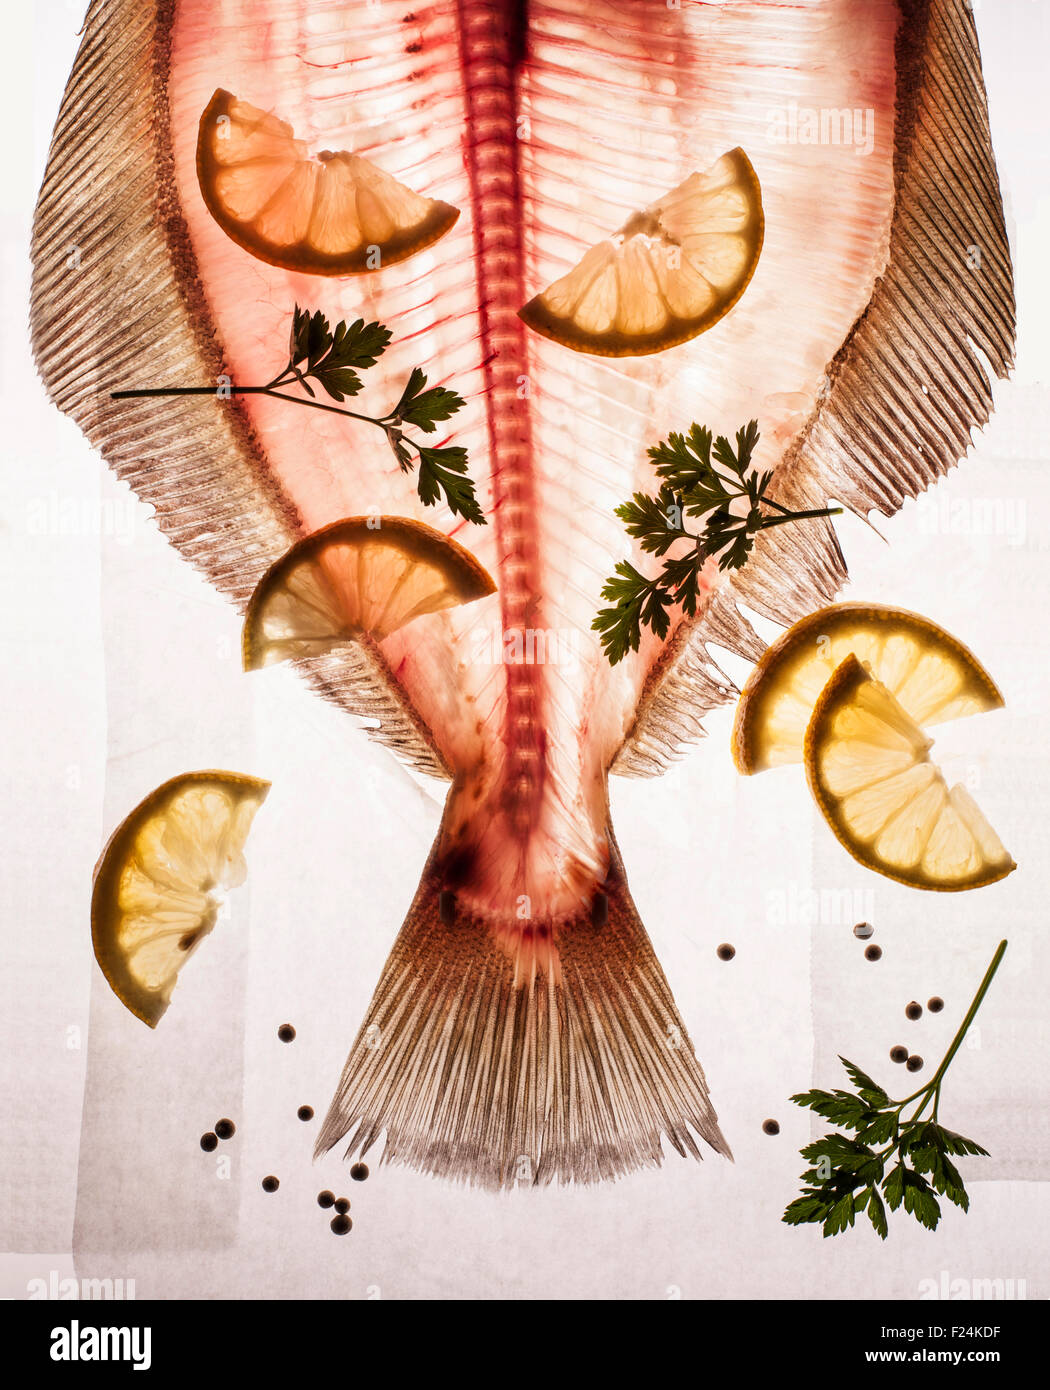 Rosa durchscheinend kopflosen Fisch mit Knochen, Schweif und Flossen am Leuchttisch mit Zitrone und Petersilie Stockfoto